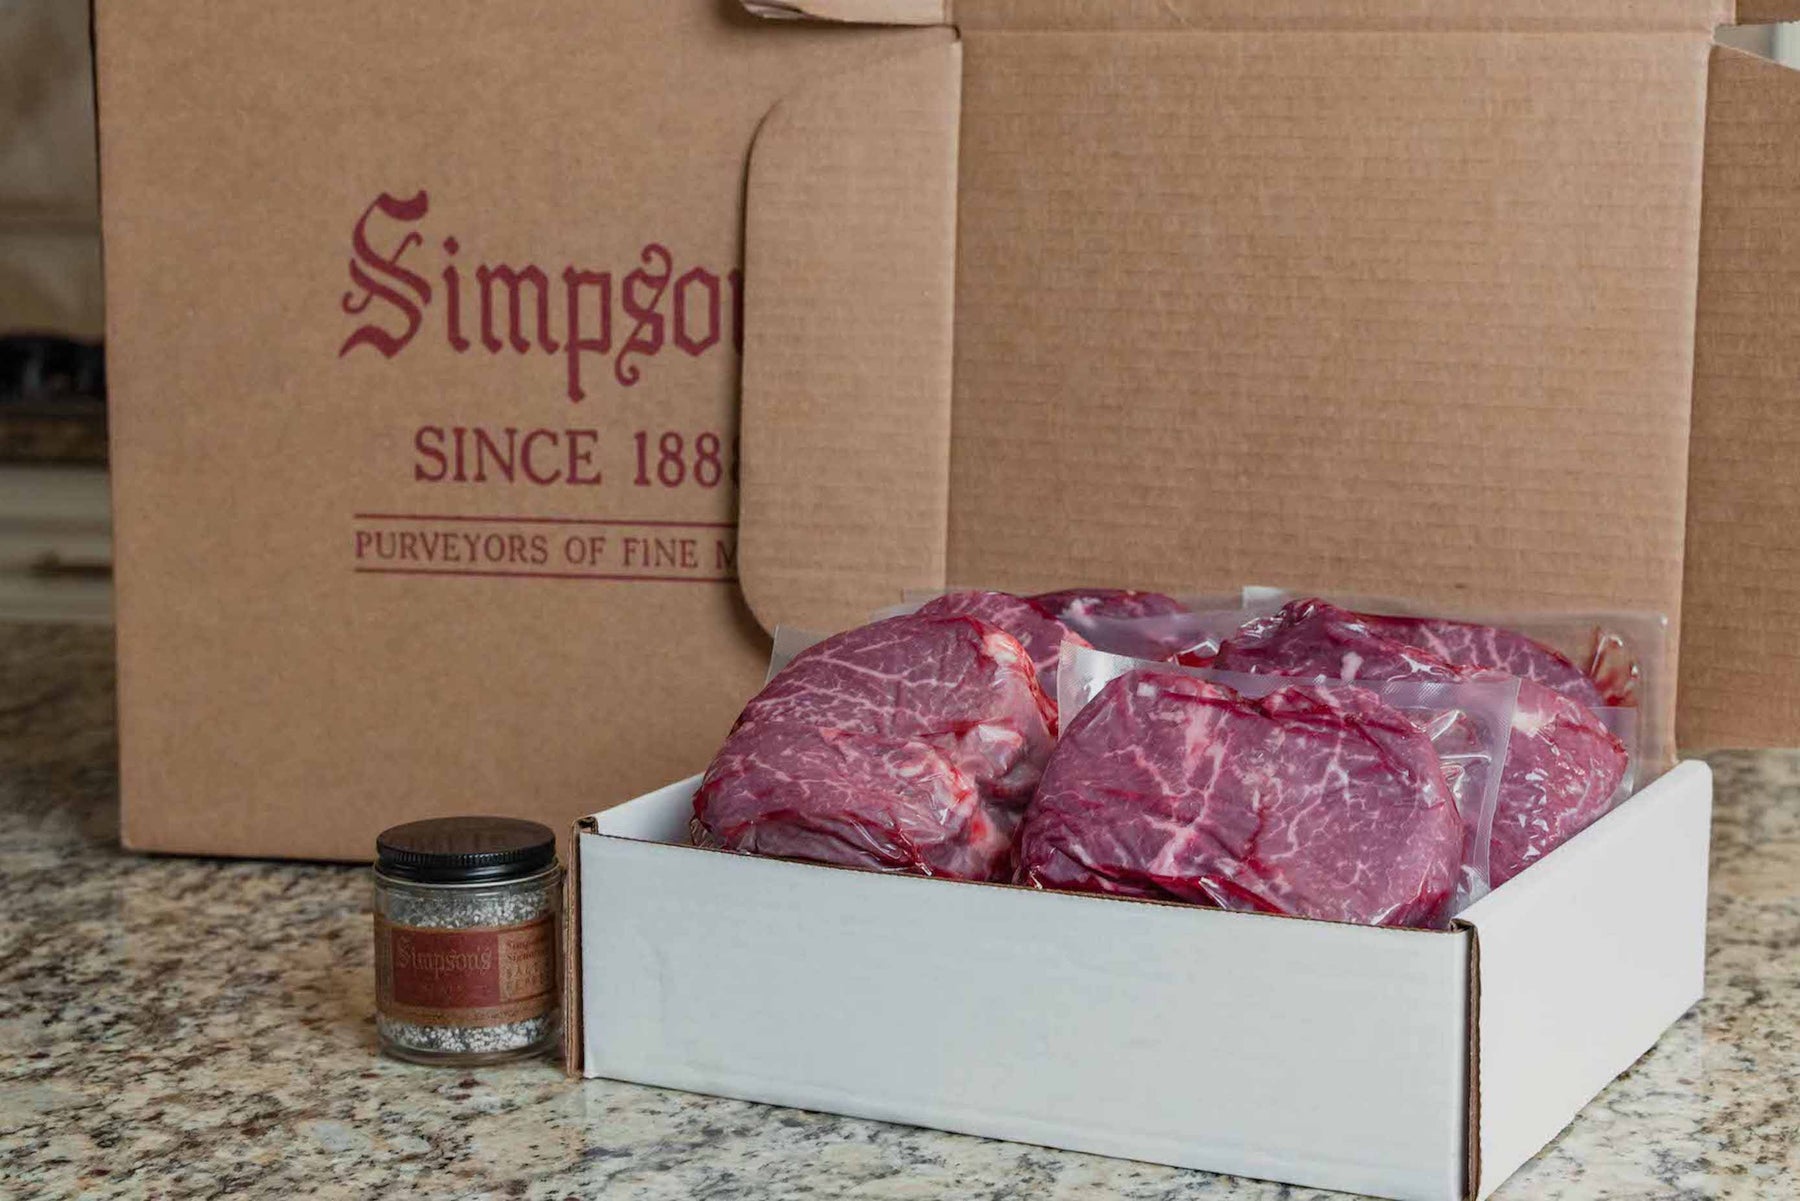 Steak Gift Box